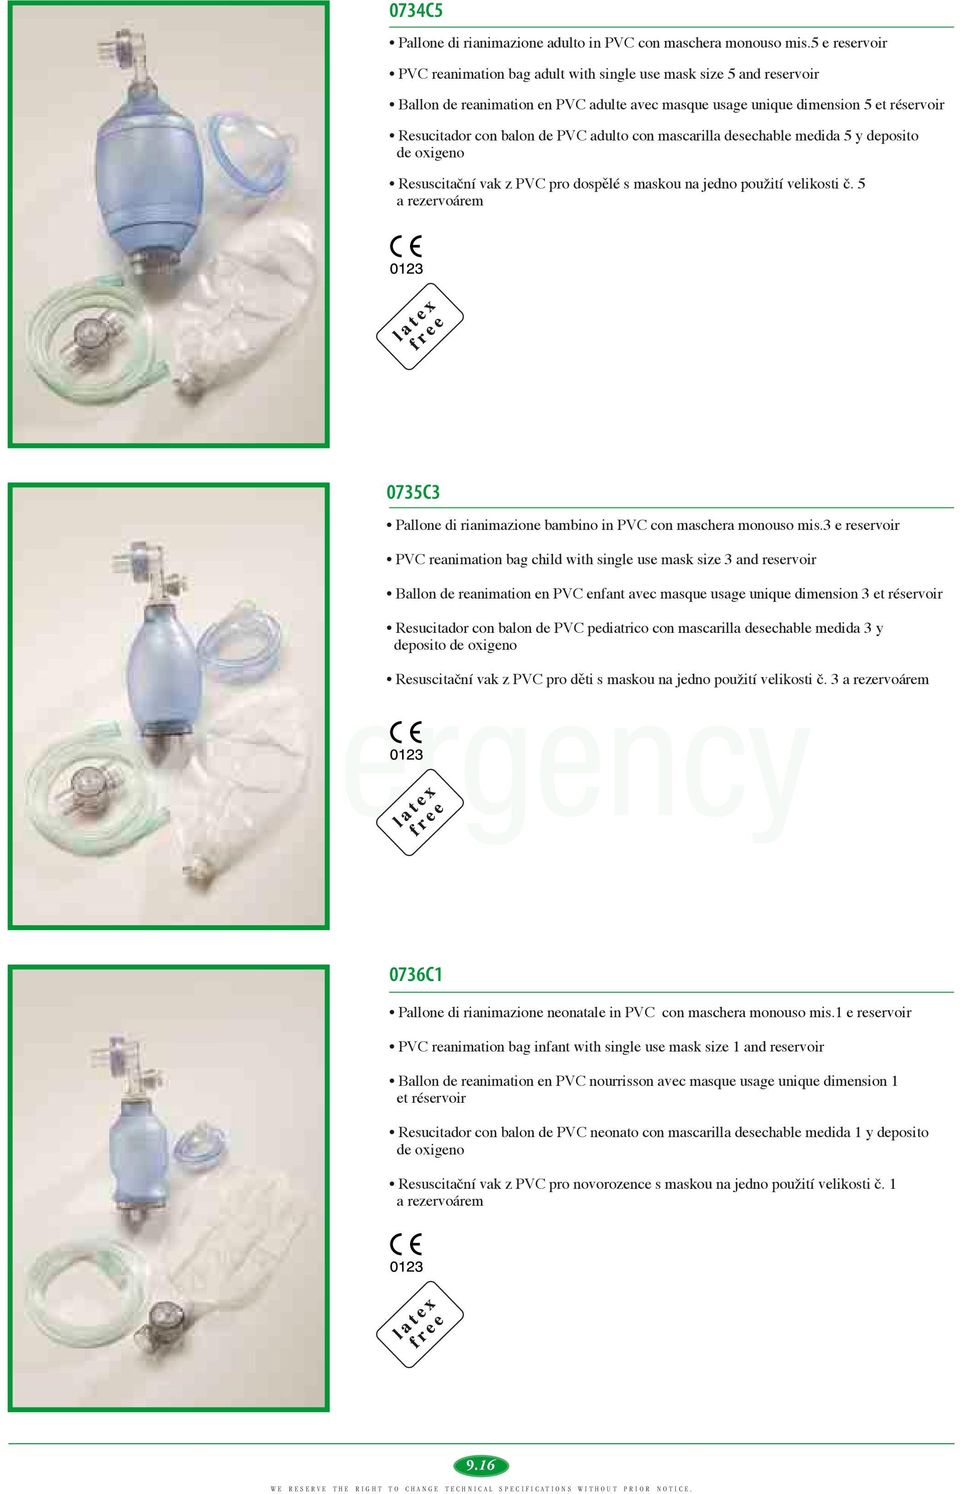 adulto con mascarilla desechable medida 5 y deposito de oxigeno Resuscitační vak z PVC pro dospělé s maskou na jedno použití velikosti č.